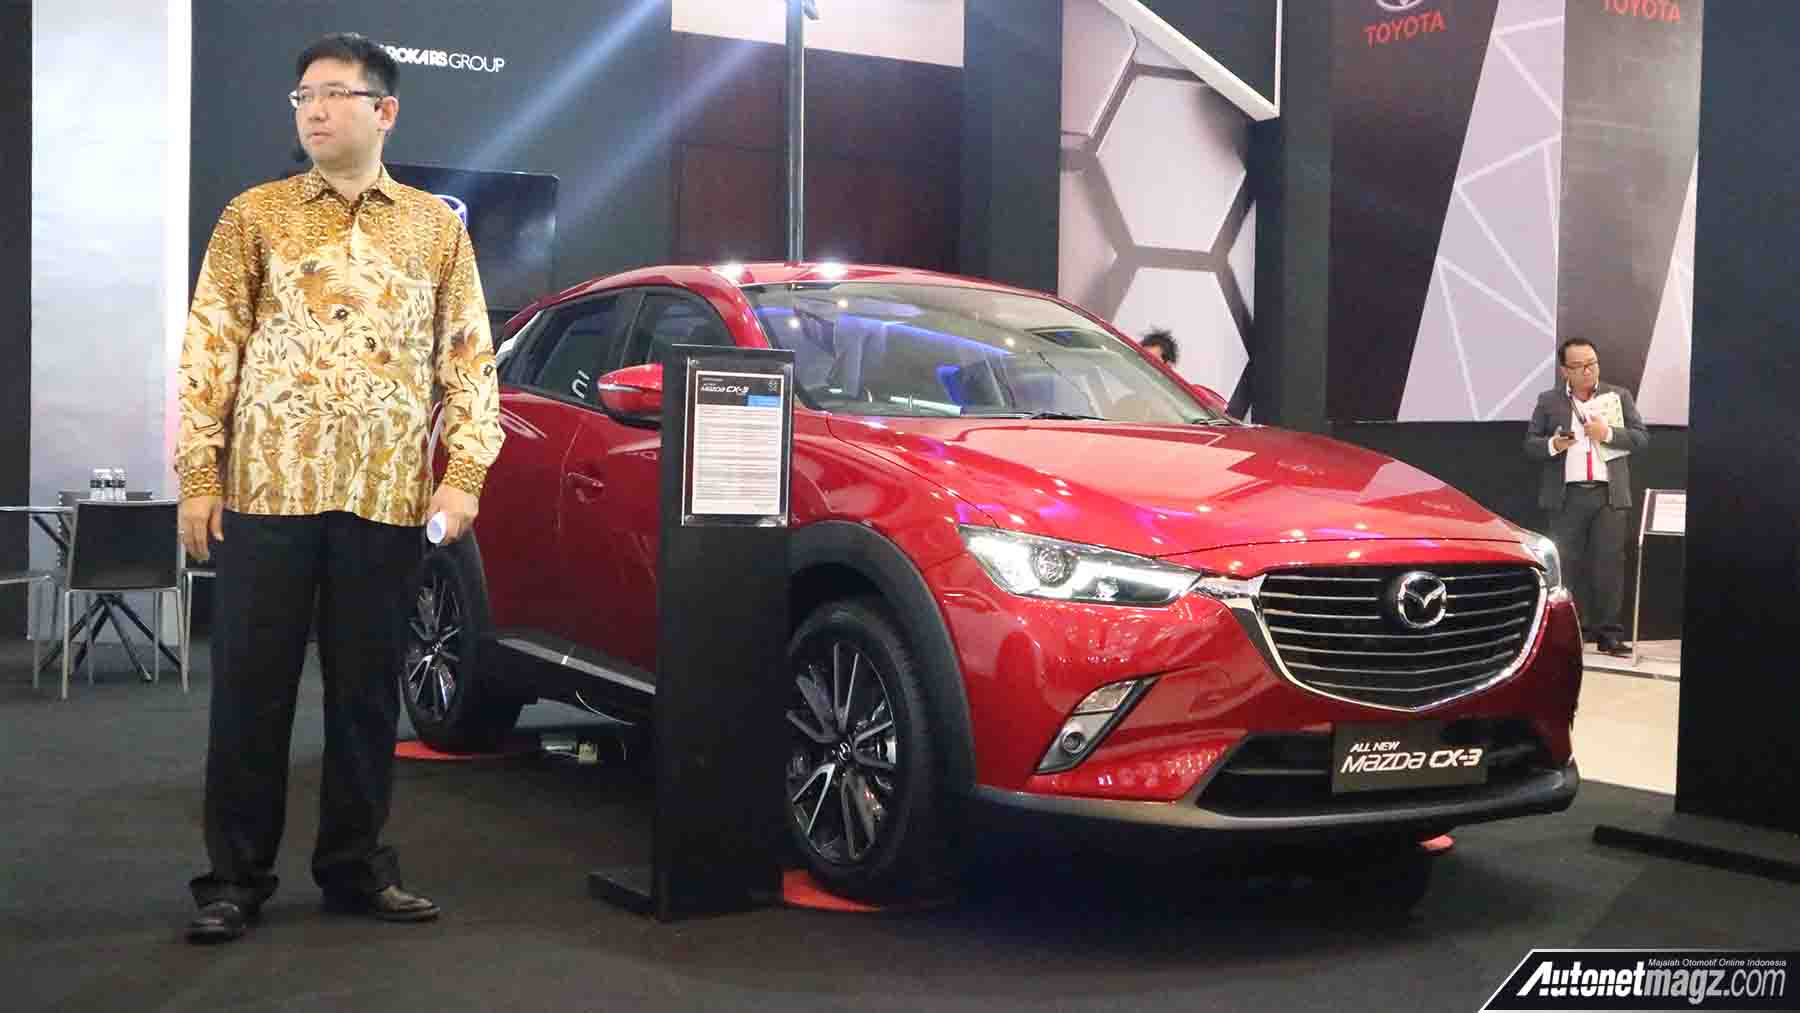 Berita, Mazda CX-5 di GIIAS Surabaya Auto Show 2017: Mazda Bawa Tiga Produk Terbaru di GIIAS Surabaya Auto Show 2017